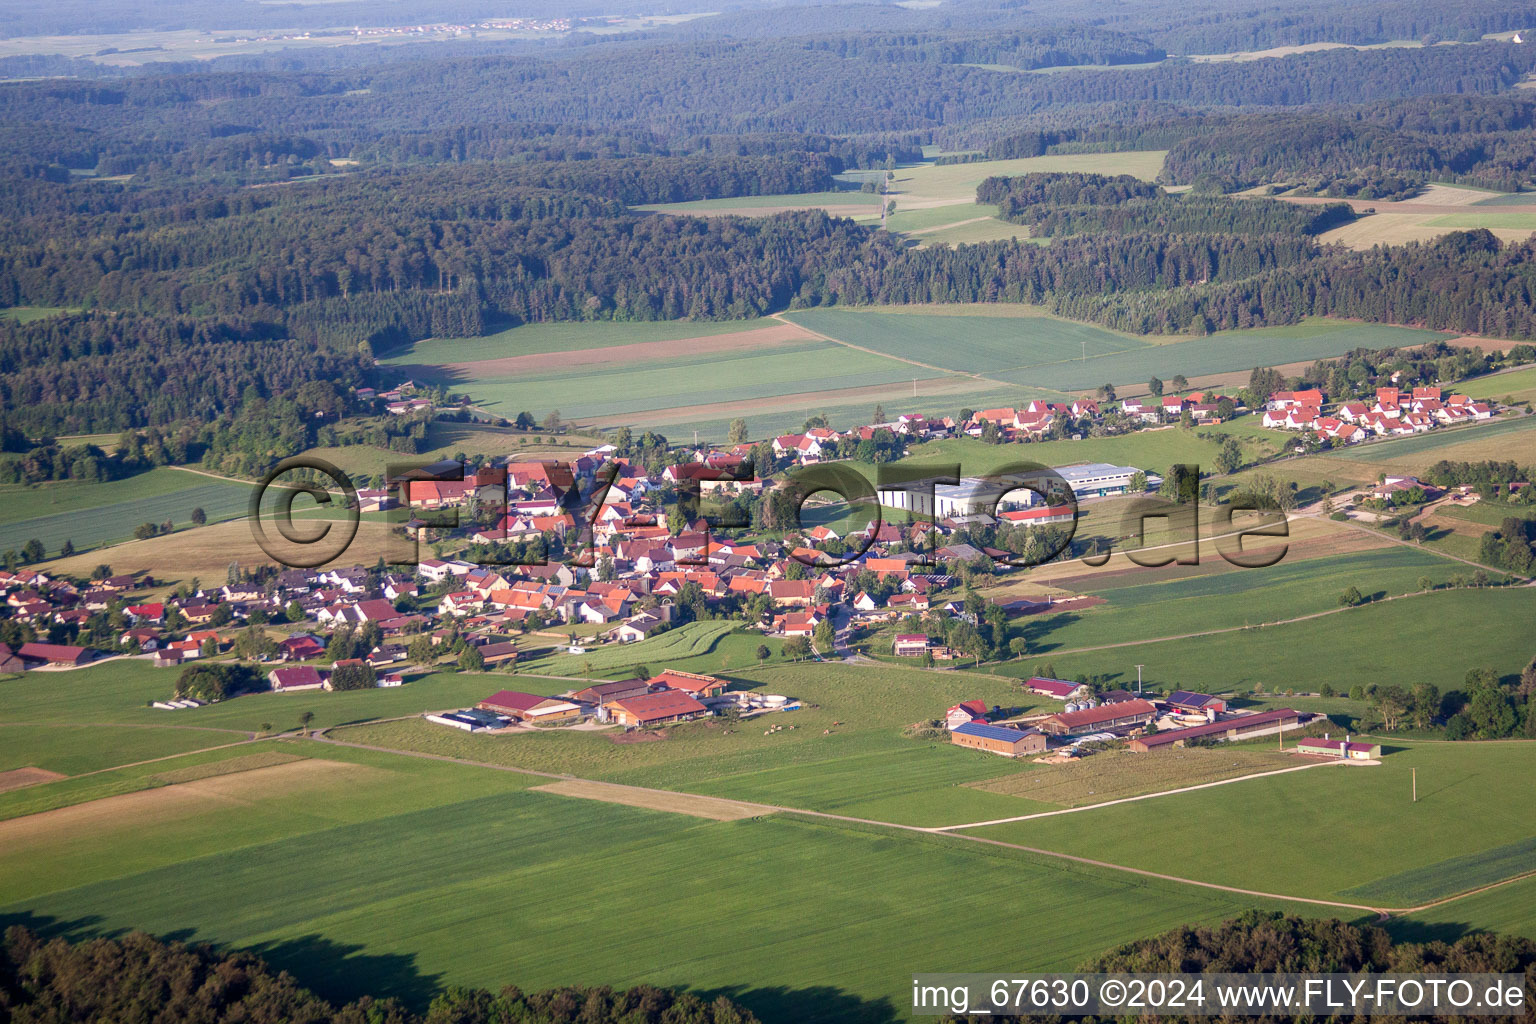 Vue aérienne de Champs agricoles et surfaces utilisables à Eglingen dans le département Bade-Wurtemberg, Allemagne